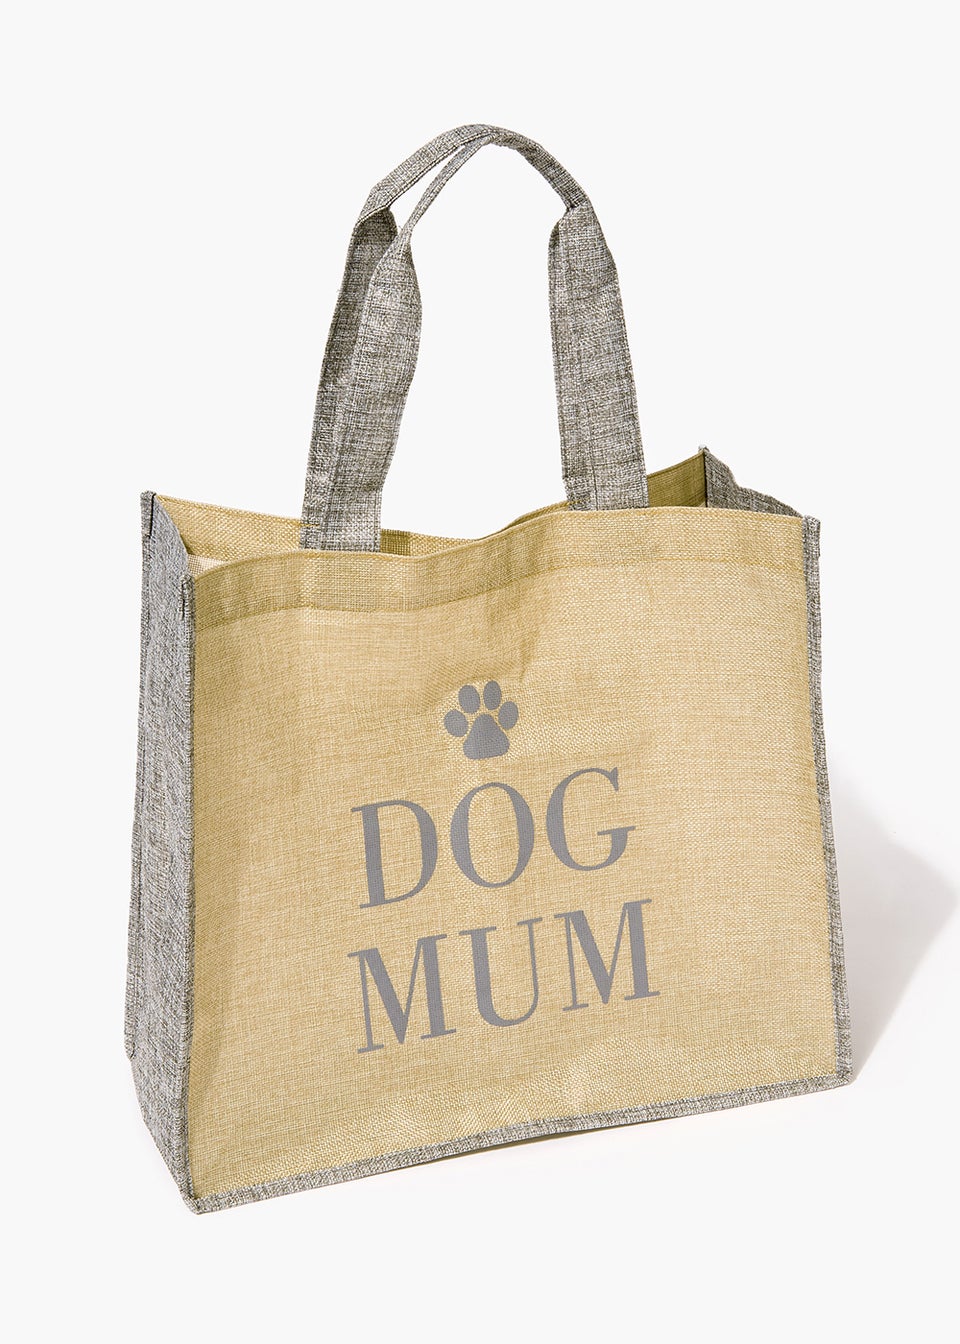 Dog Mum Tote Bag (43cm x 56cm)